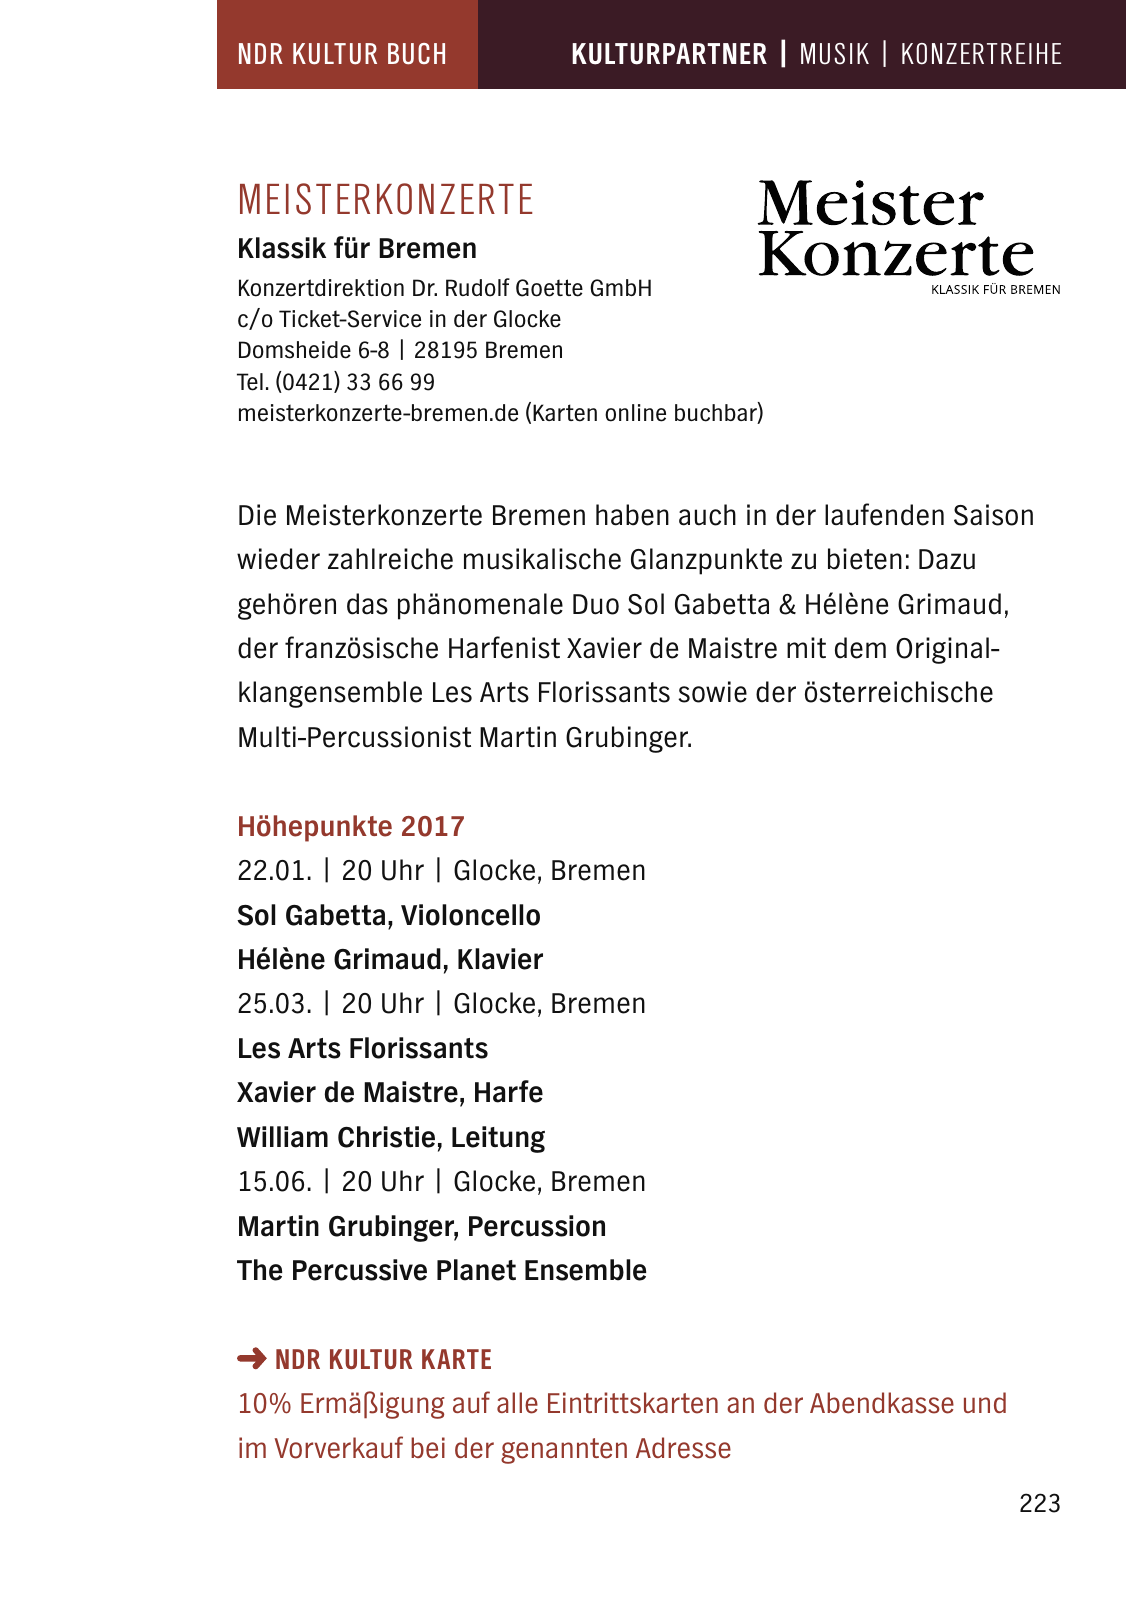 Vorschau NDR Kultur Buch 2017 Seite 225